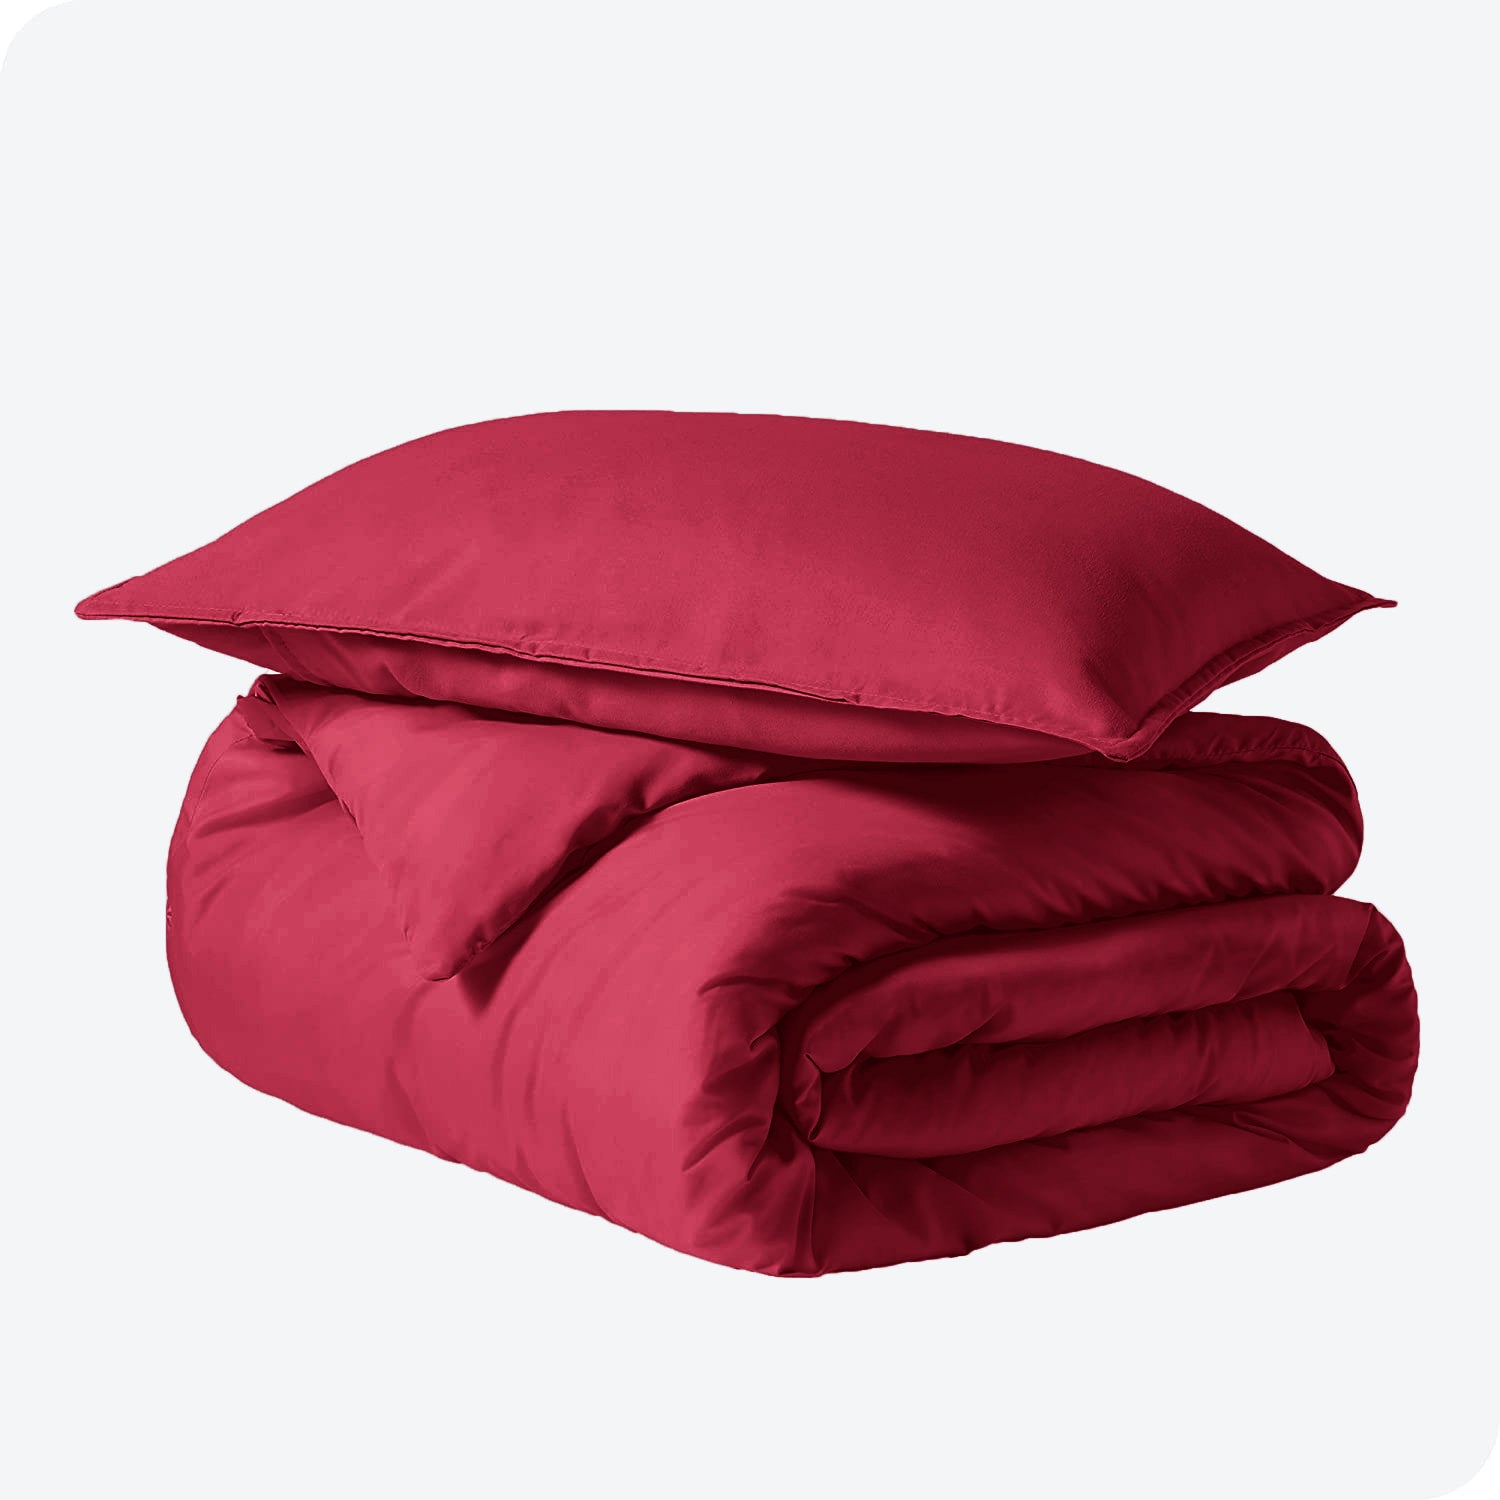 Red Duvet Cover Plain Bedding Set